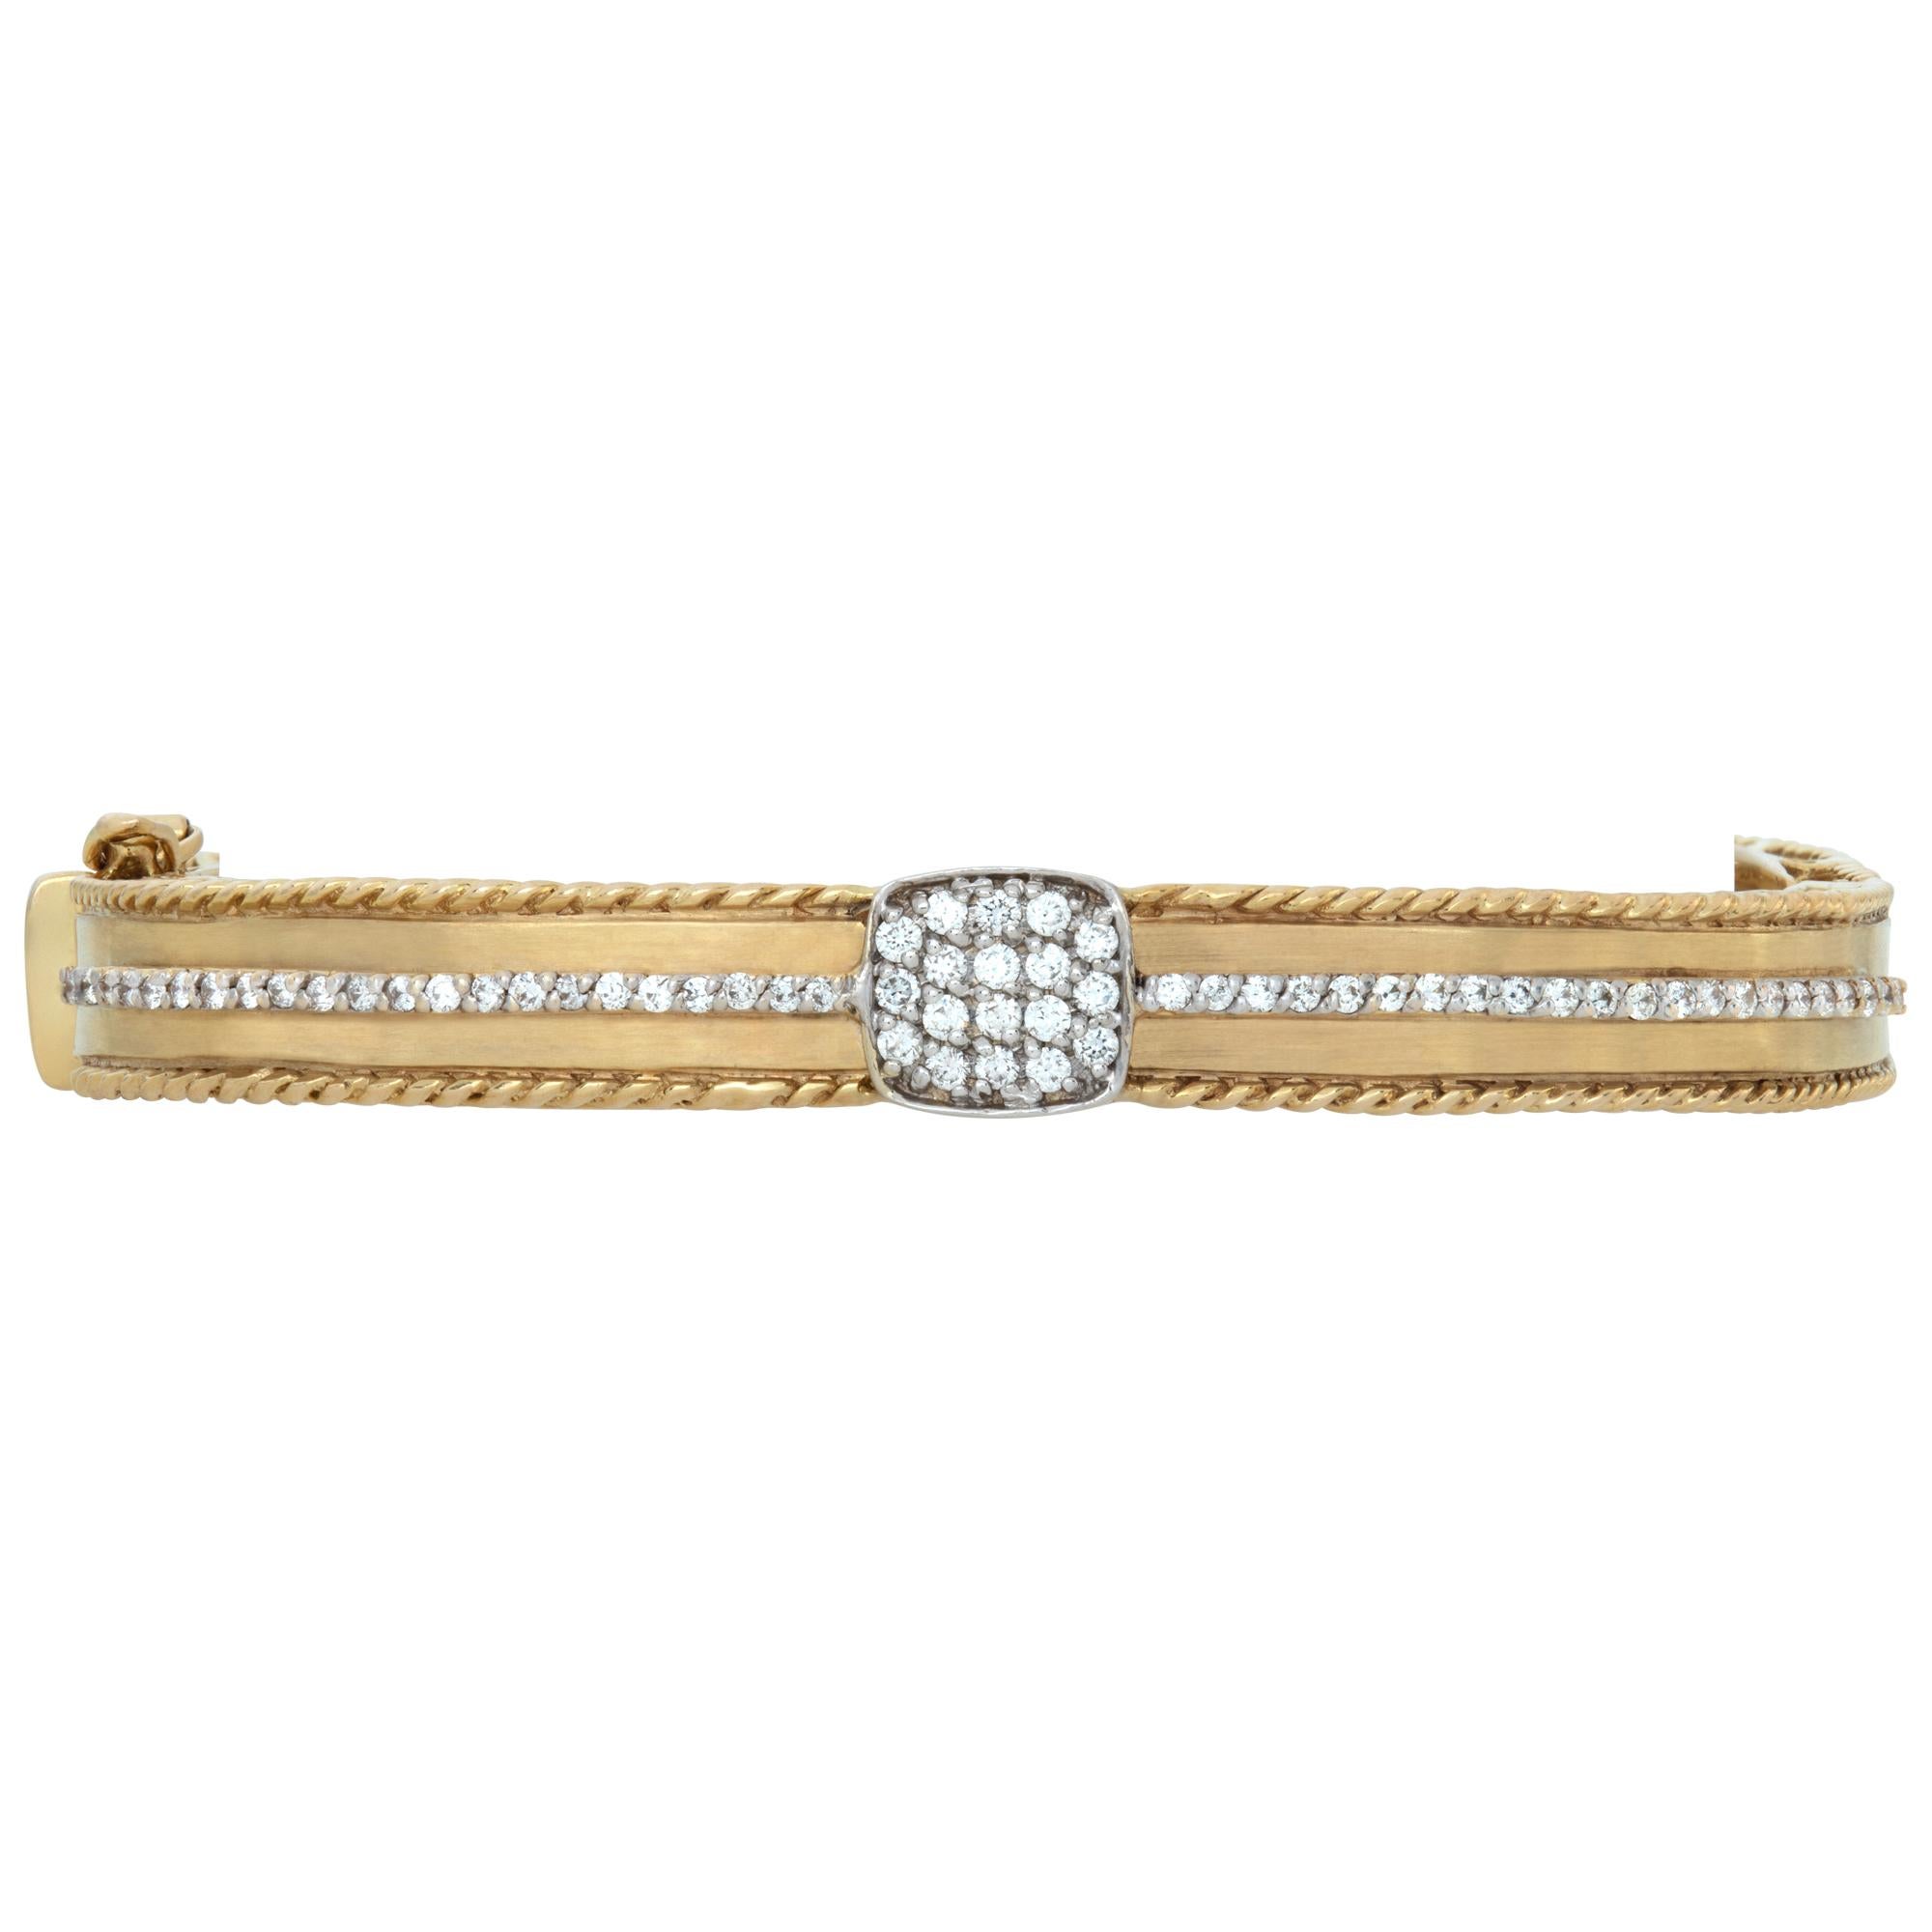 Bracelet en or jaune 14k contenant environ 1 carat de diamants de couleur G-H et de pureté VS. Convient à un poignet de 6 à 7 pouces, largeur 8 mm.